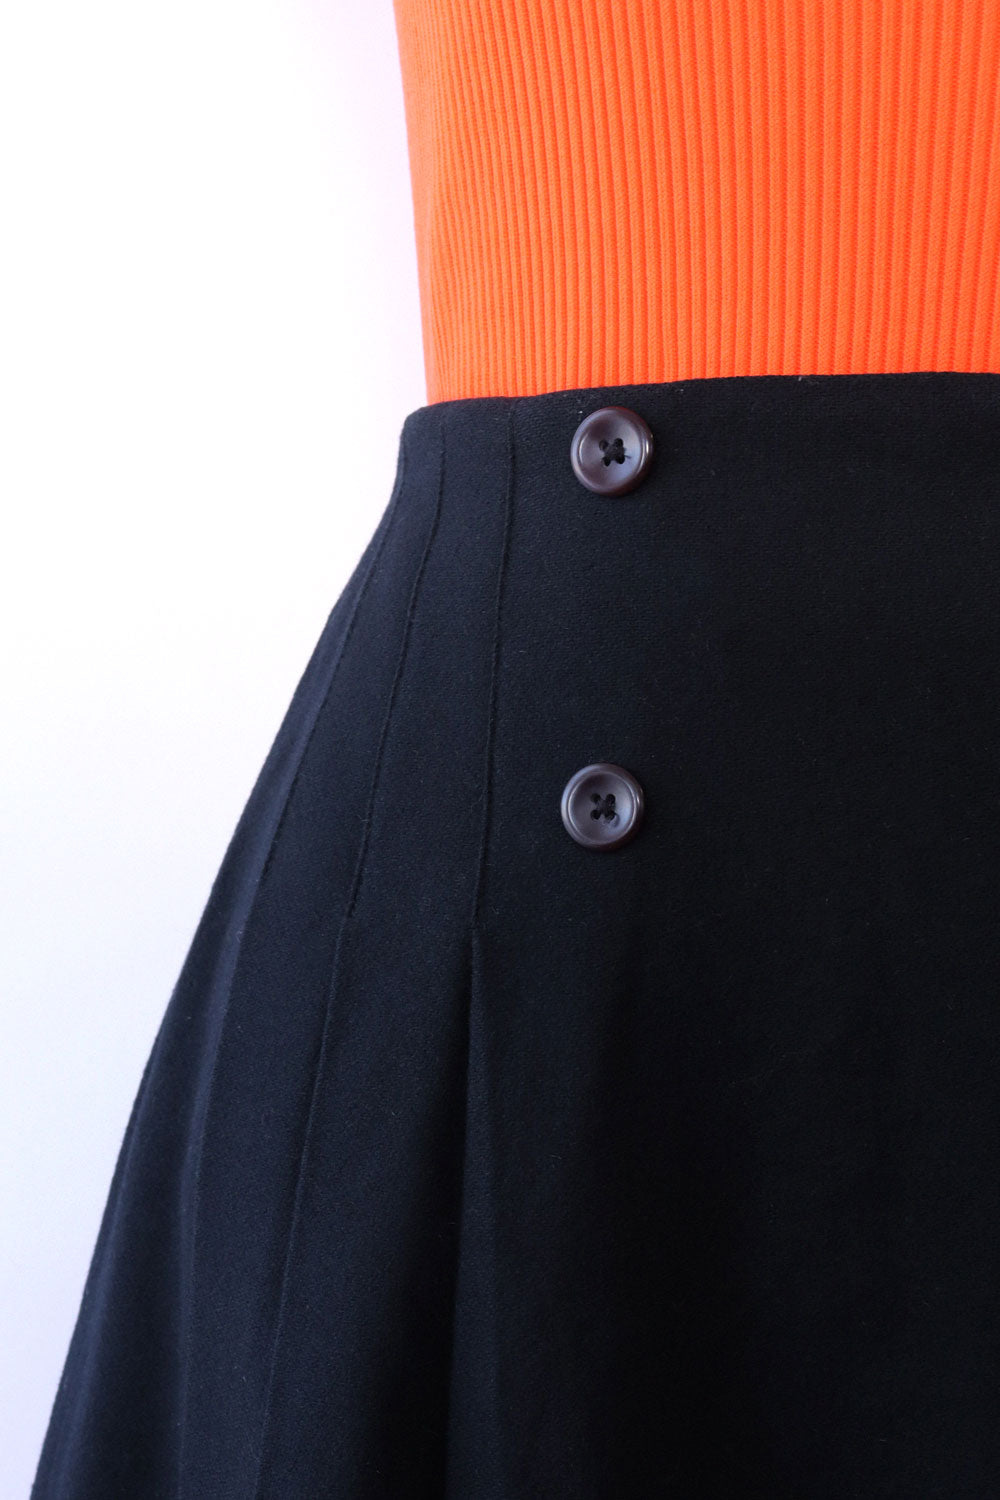 Black Buttoned Mini Skirt S